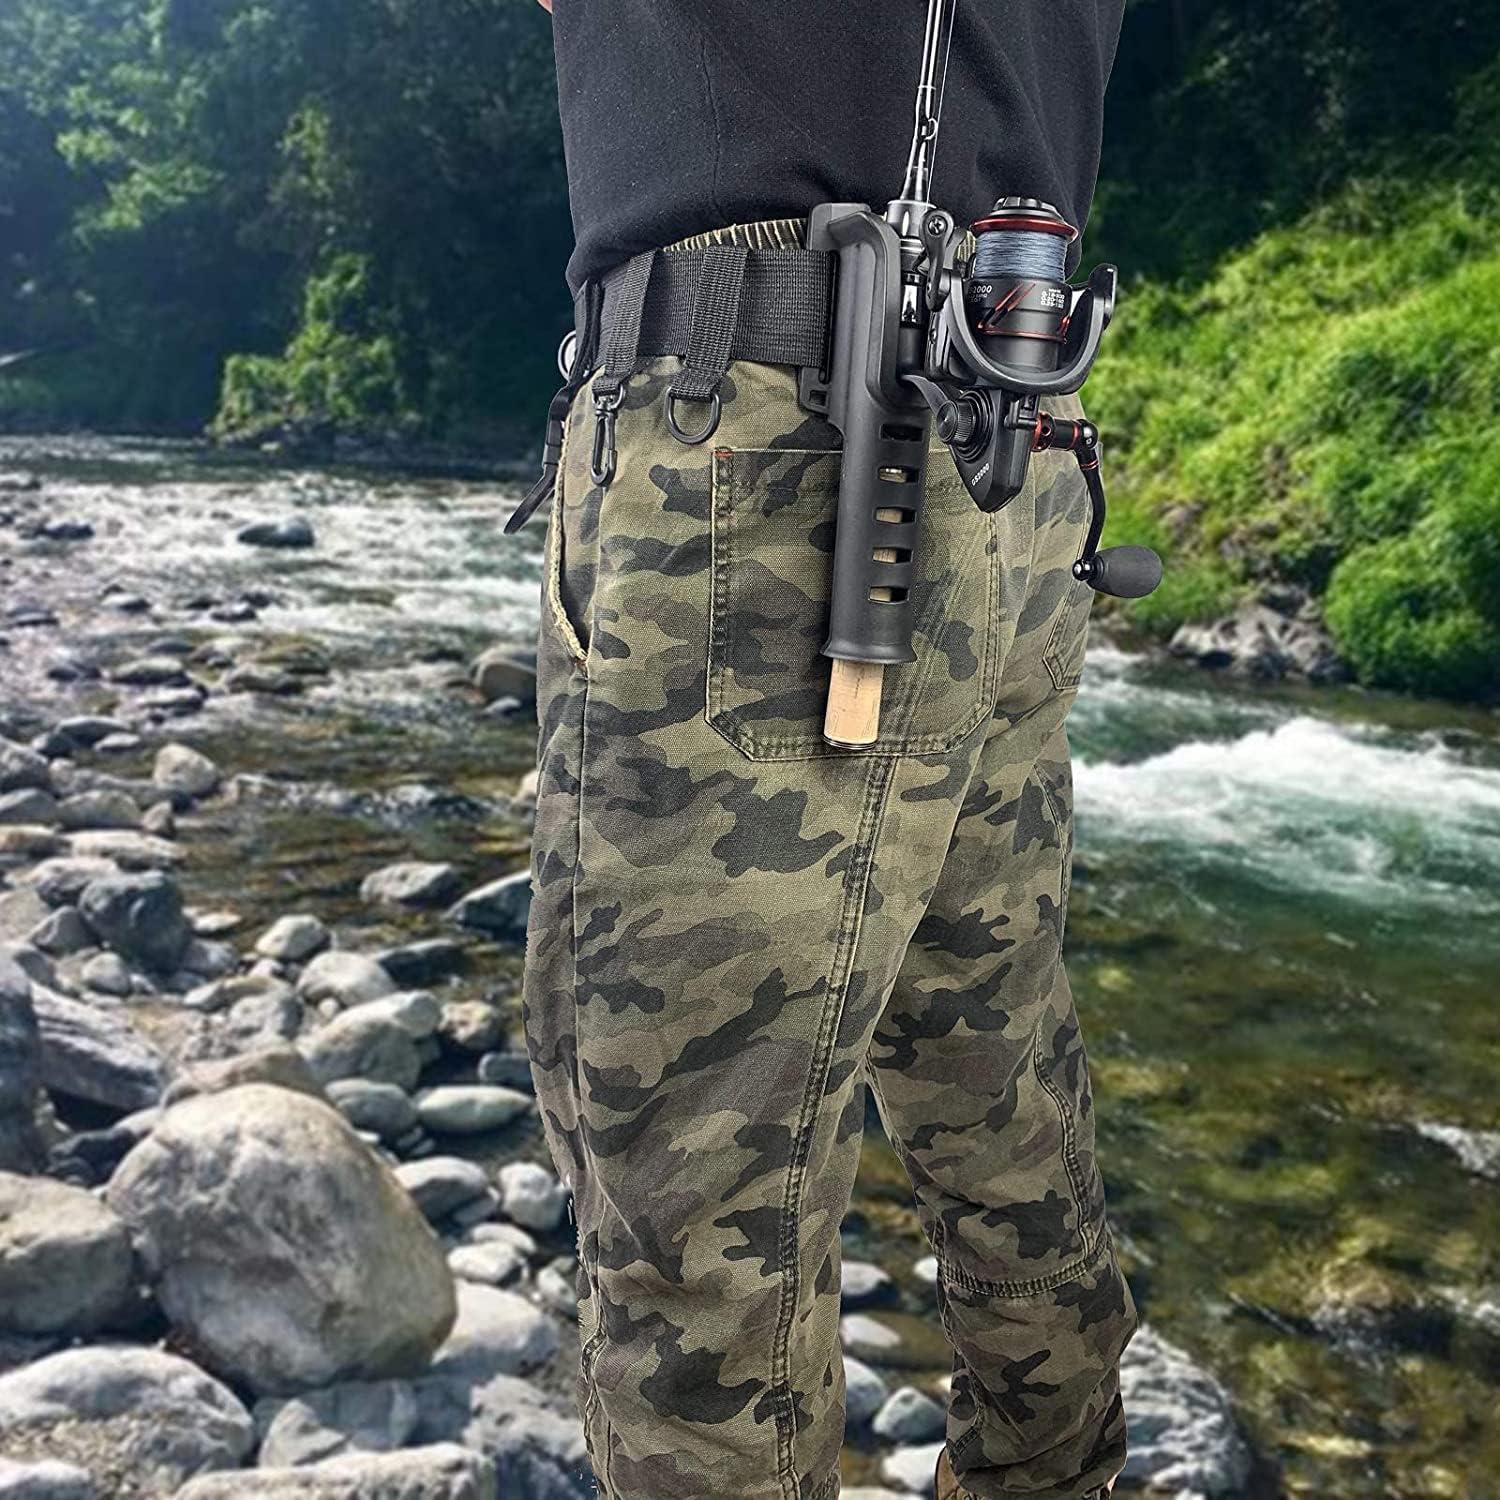 MEEYO Fishing Waist Belt Rod Holder Adjustable Belts Outdoor Lure